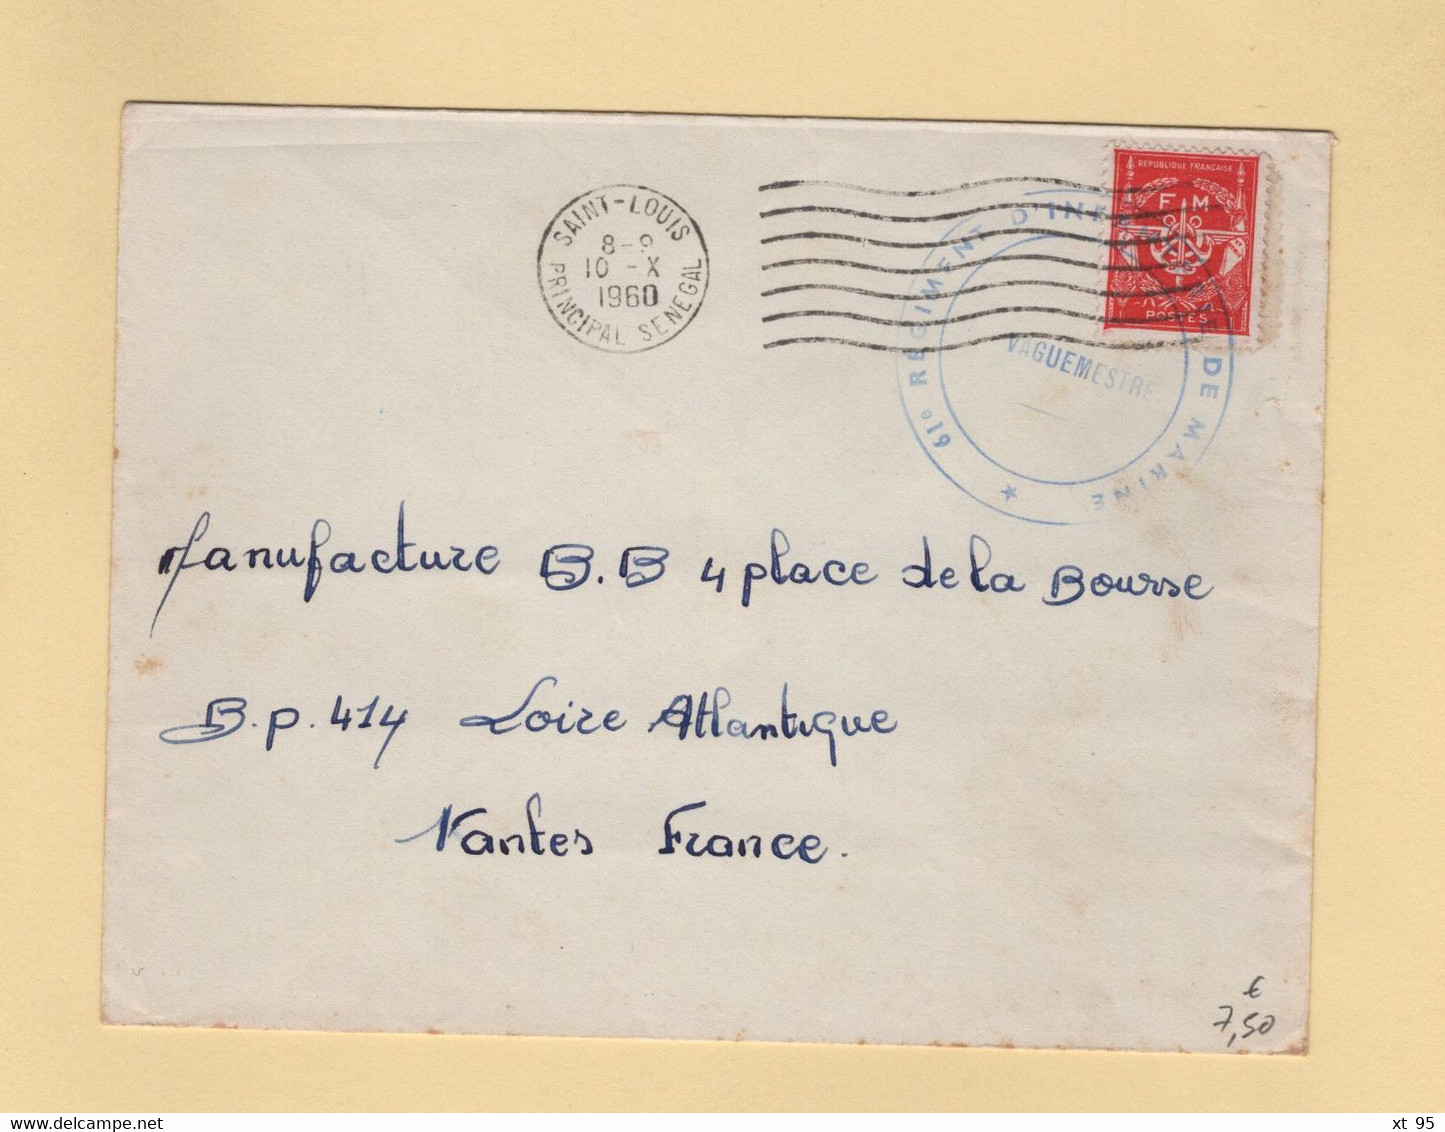 Timbre FM - Saint Louis - Senegal - 1960 - 61e Regiment D Infanterie De Marine - Francobolli  Di Franchigia Militare